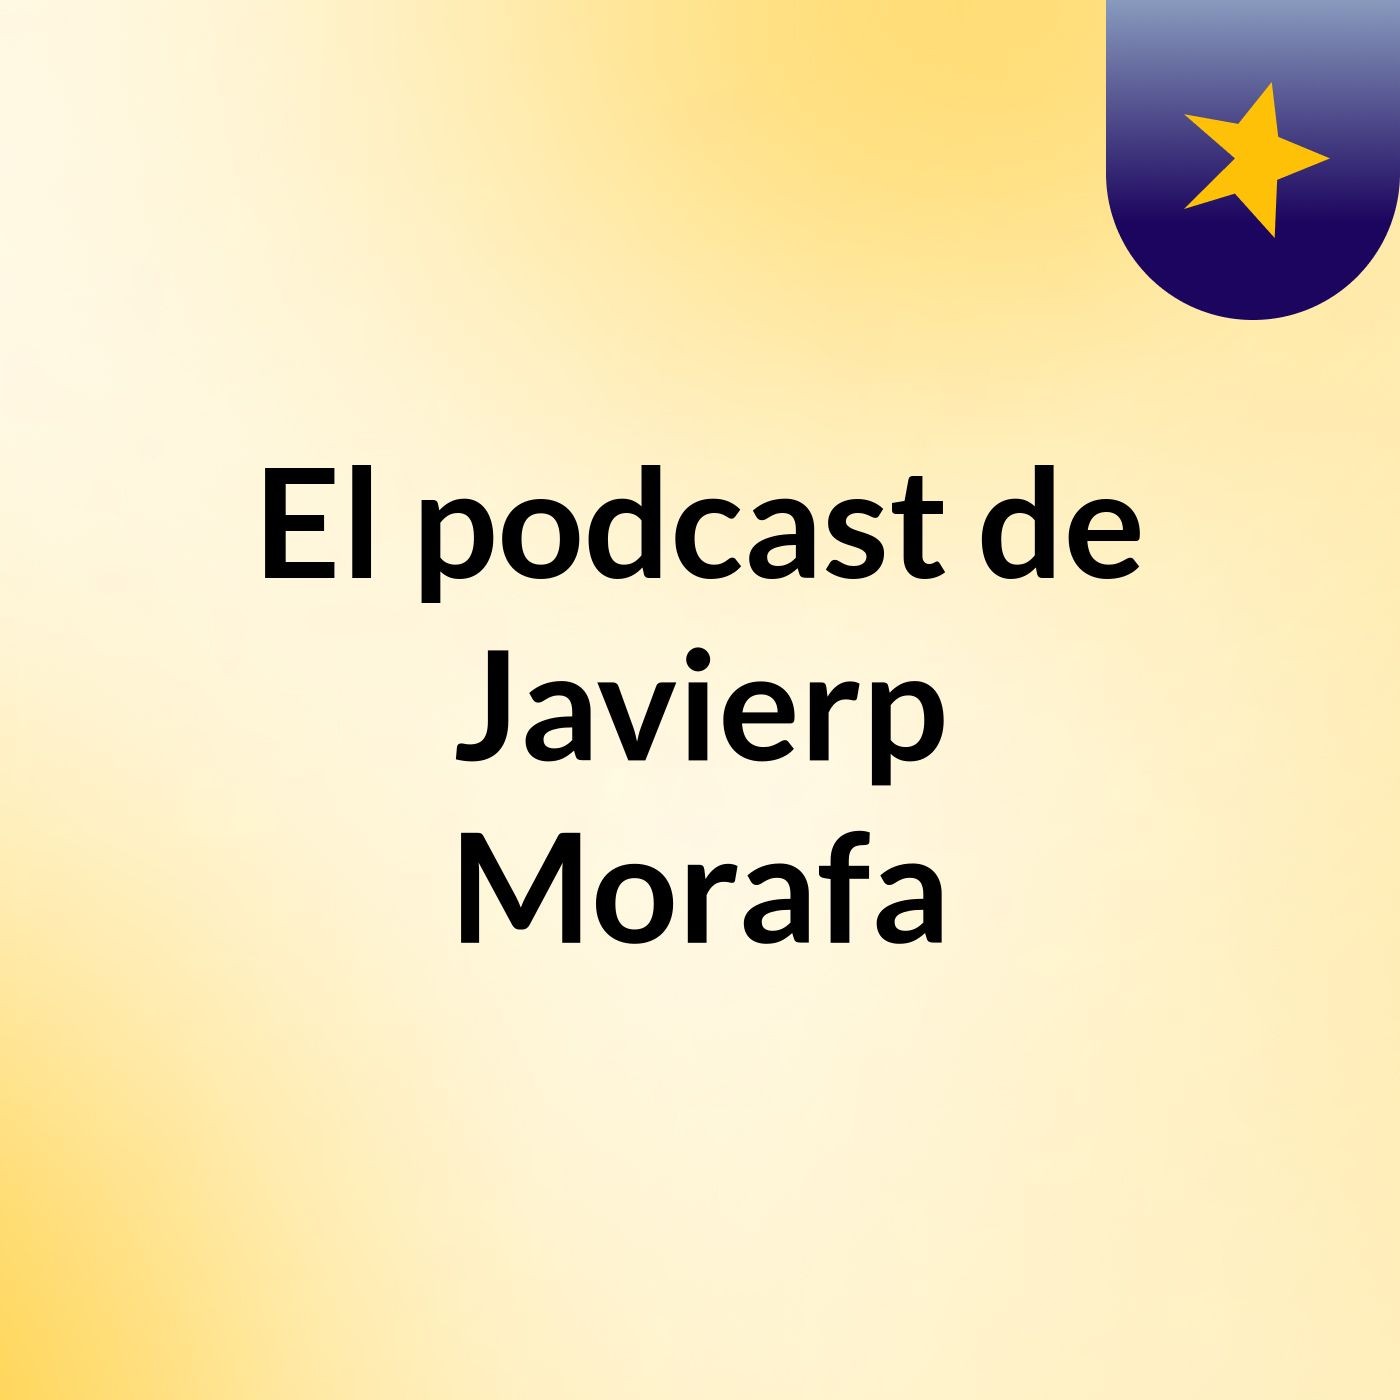 El podcast de Javierp Morafa